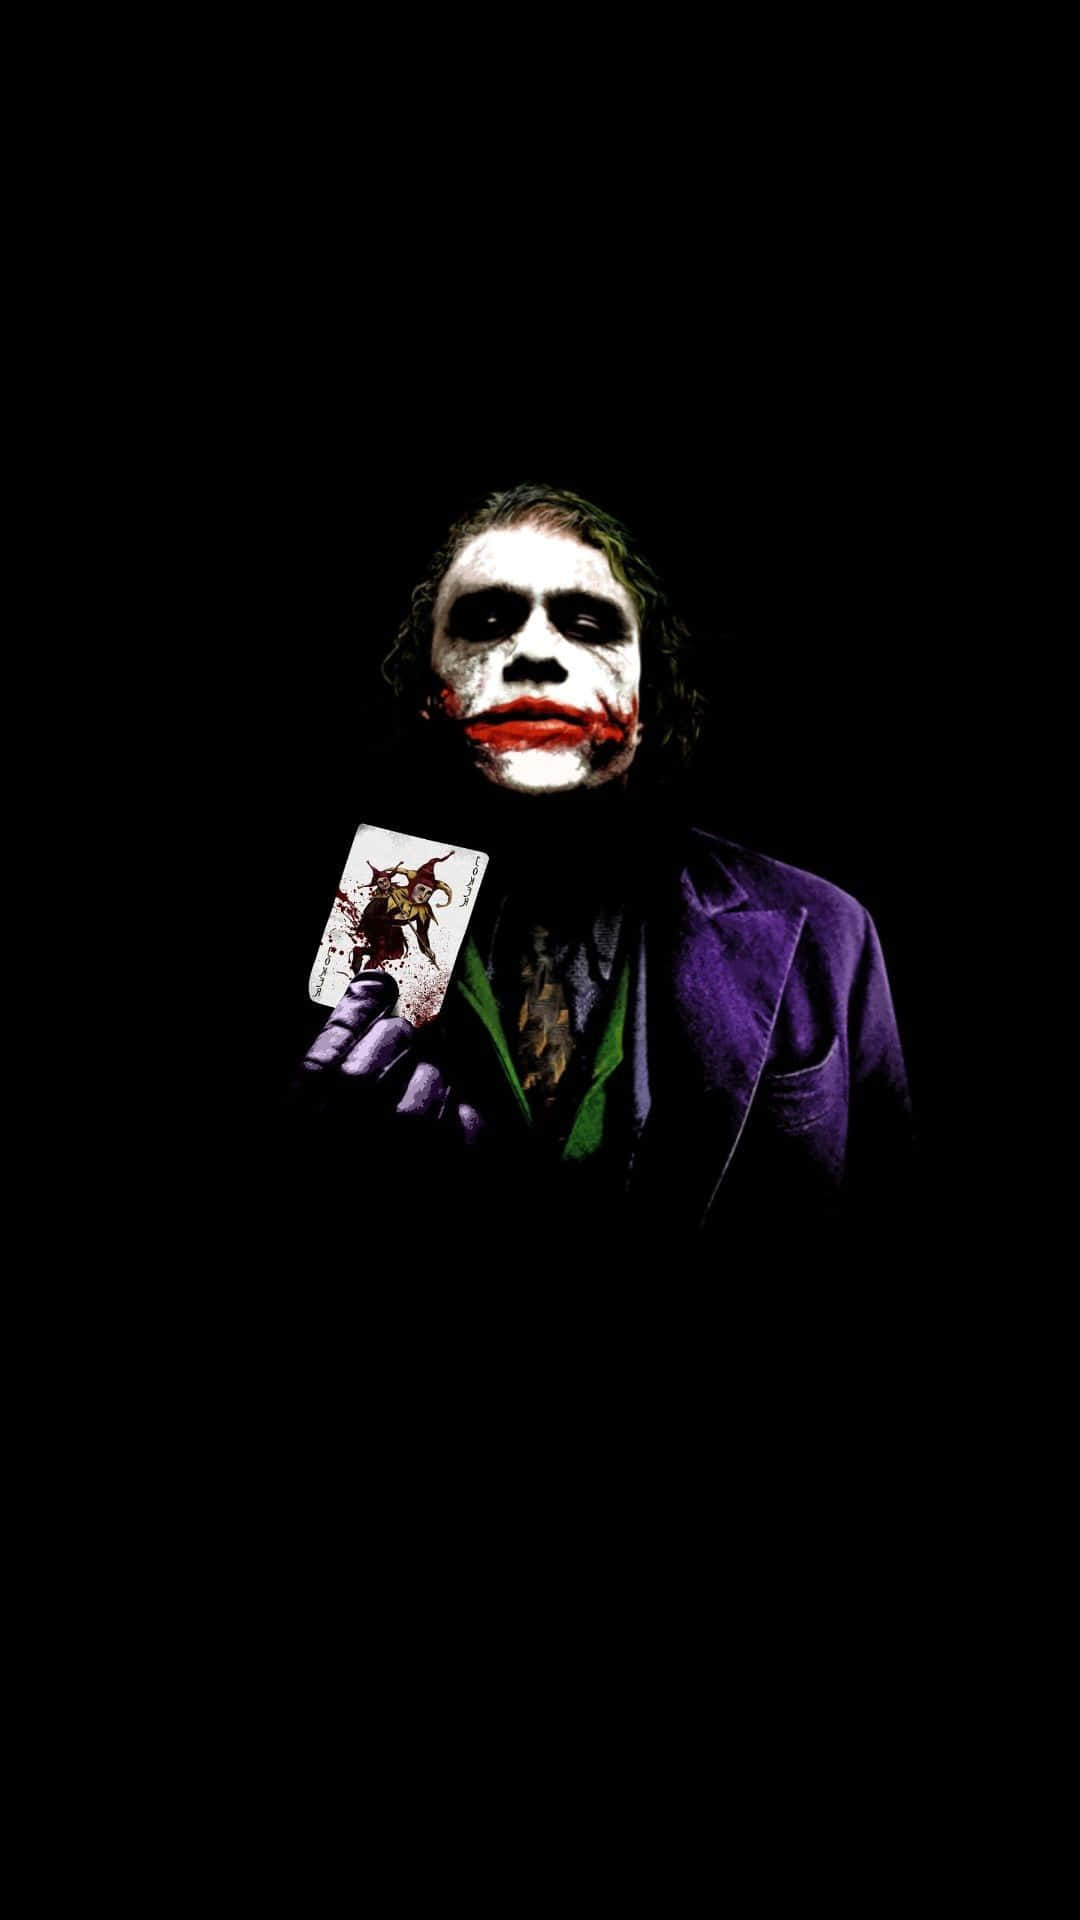 Sinister Joker Art in Vibrant Hues Wallpaper